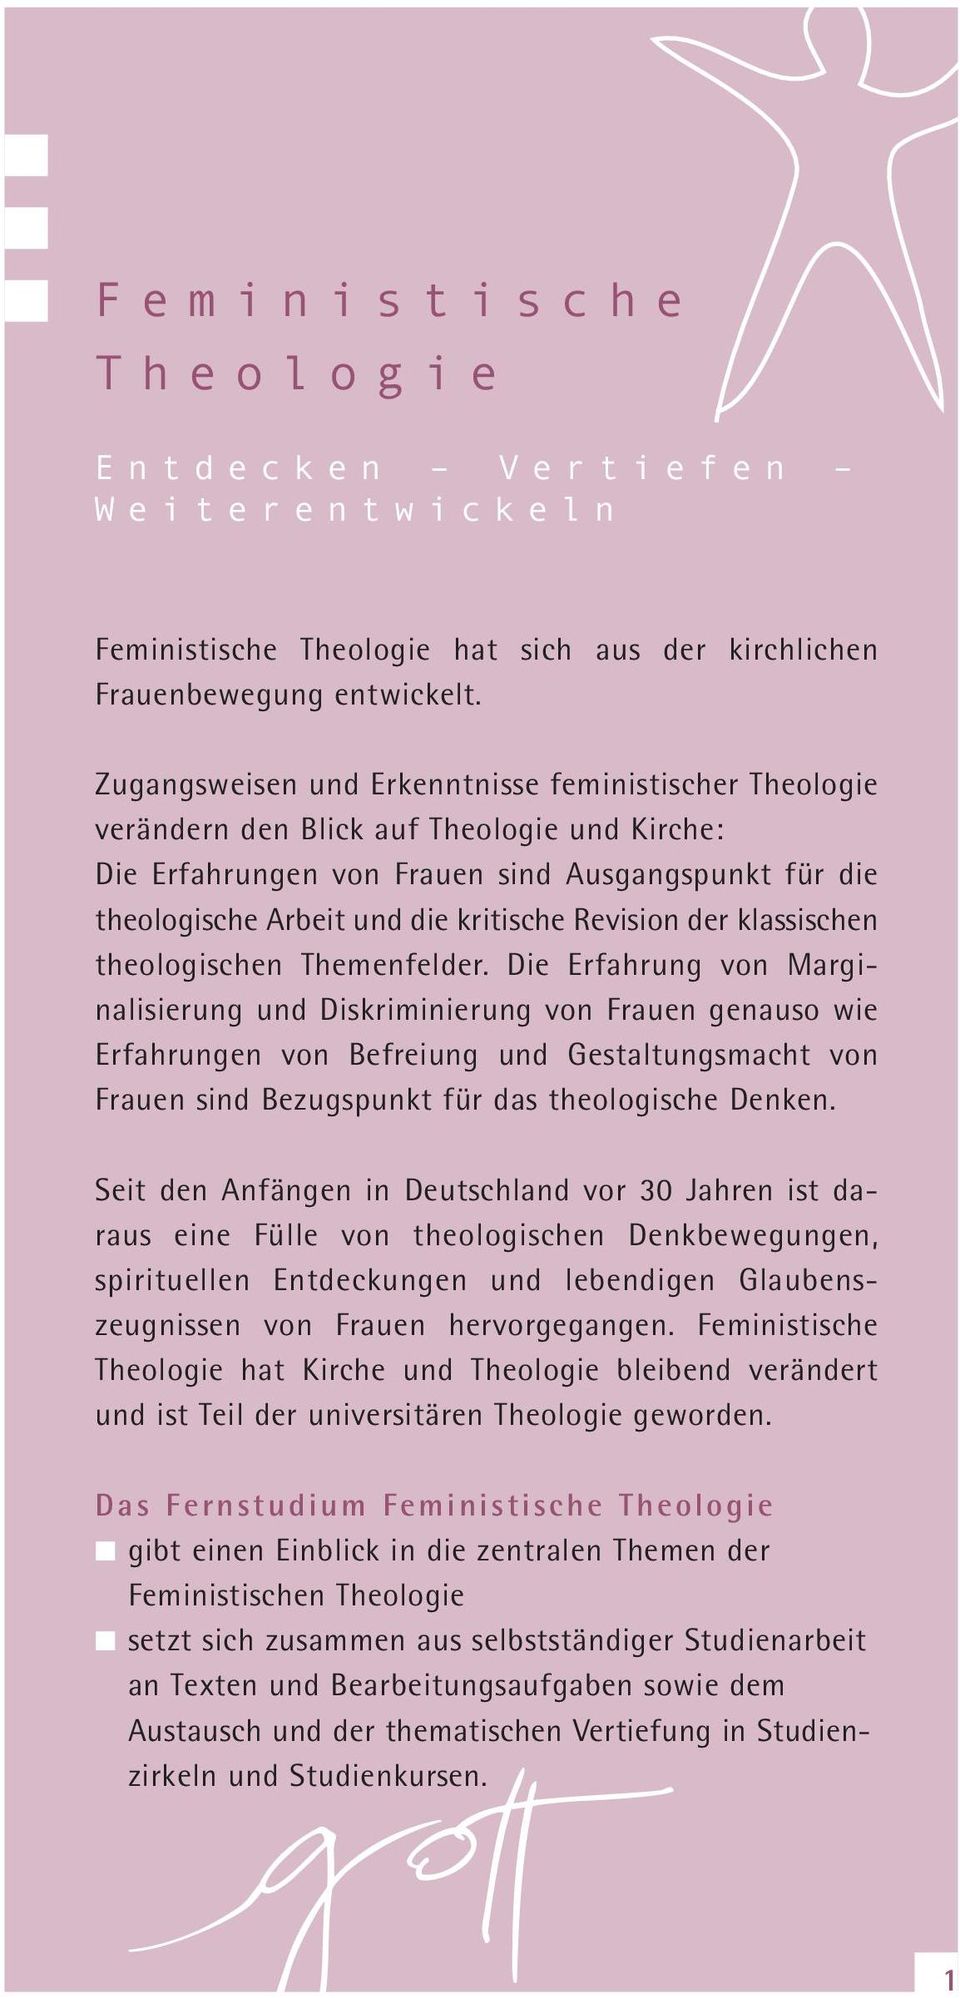 Revision der klassischen theologischen Themenfelder.